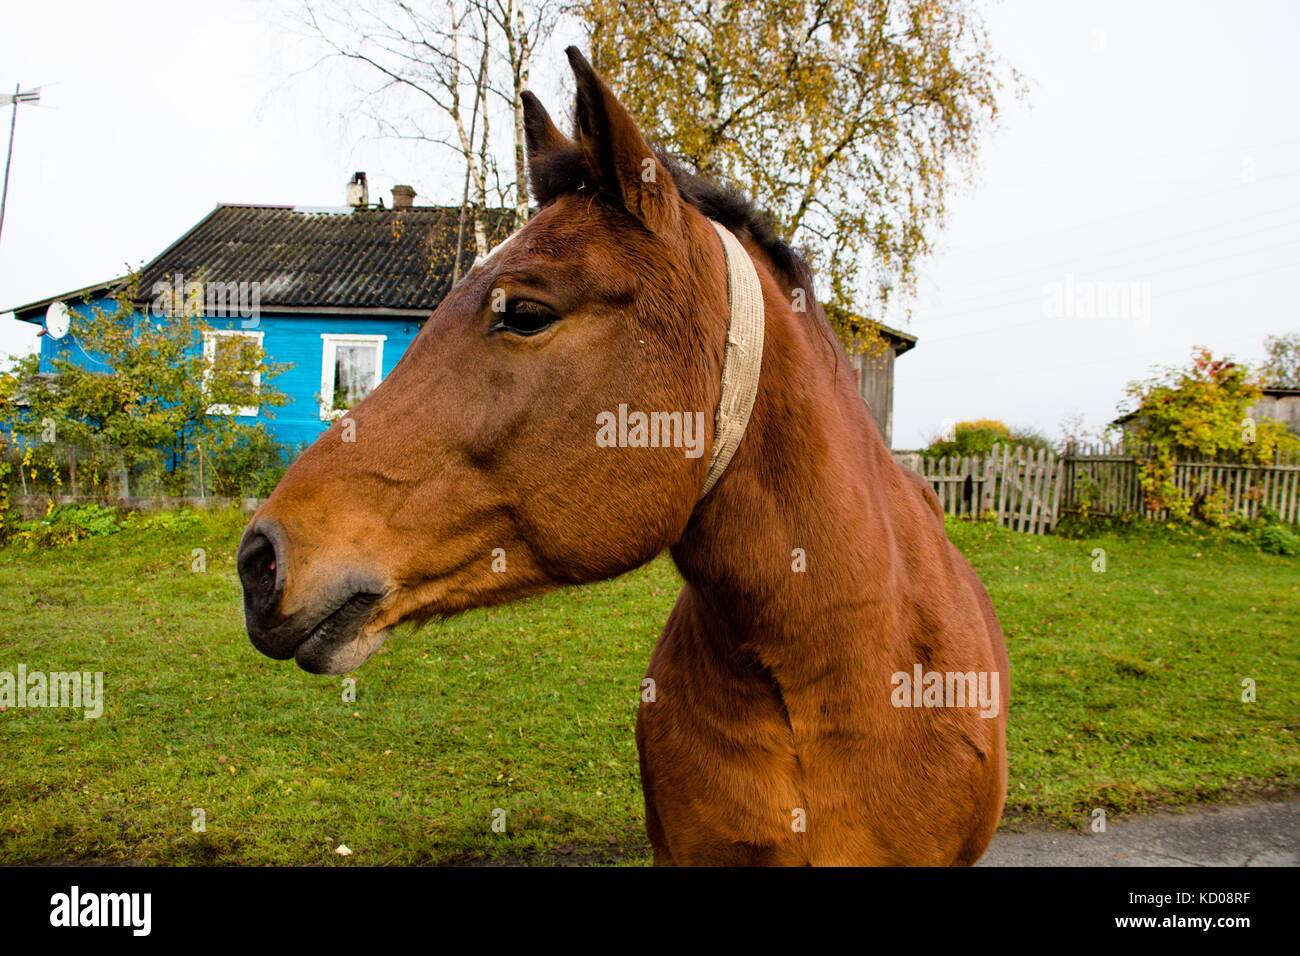 Ein schönes Pferd mit braunen Farbton auf einer Straße auf dem Land auf einem Bauernhof dreht seinen Kopf im Profil Stockfoto